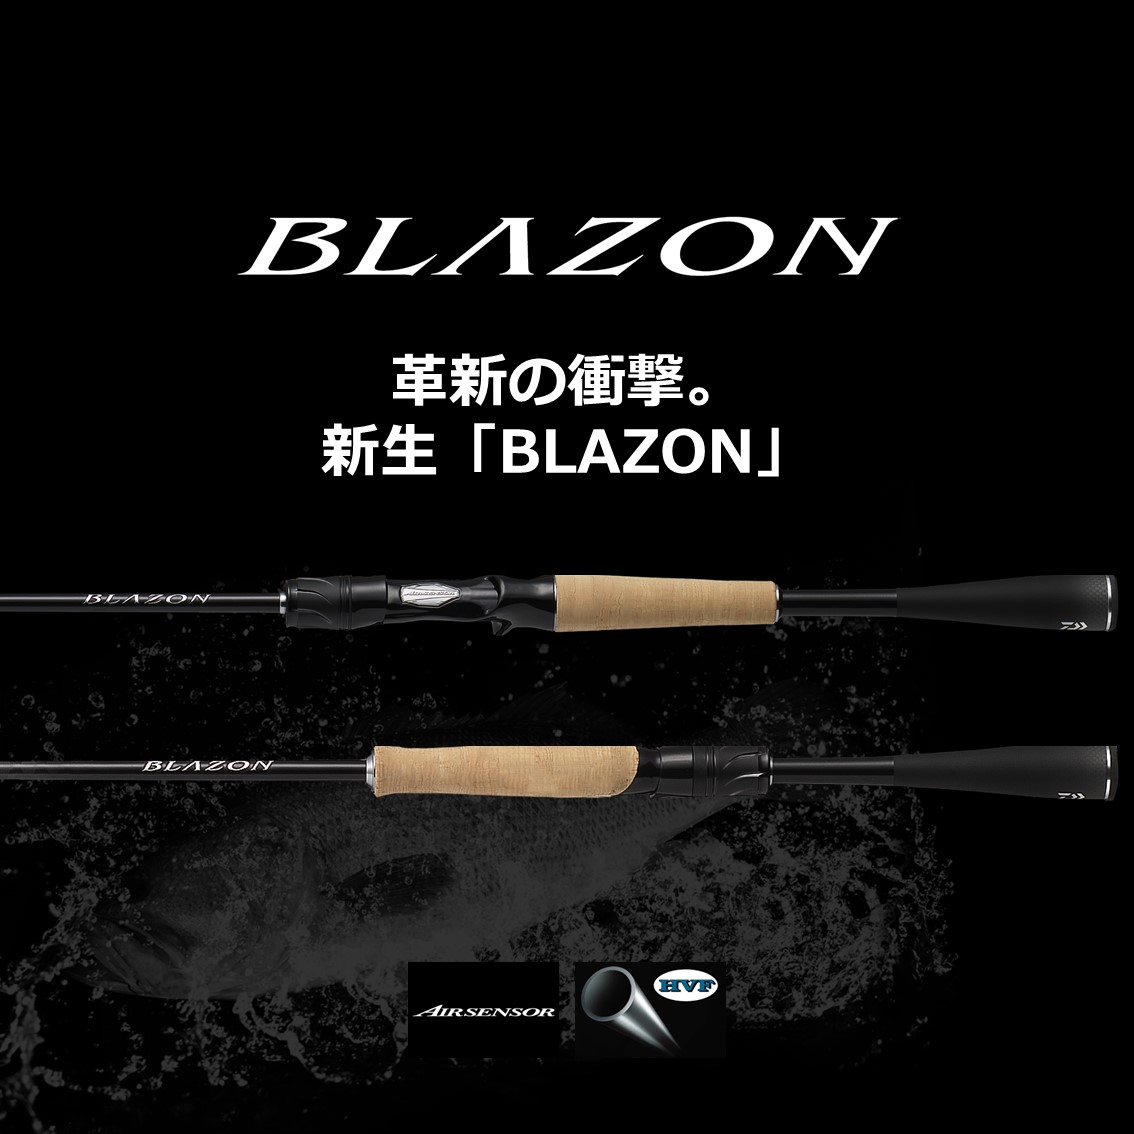 ダイワ ブレイゾン C72H-2 (バスロッド ベイト) - 釣り具の販売、通販